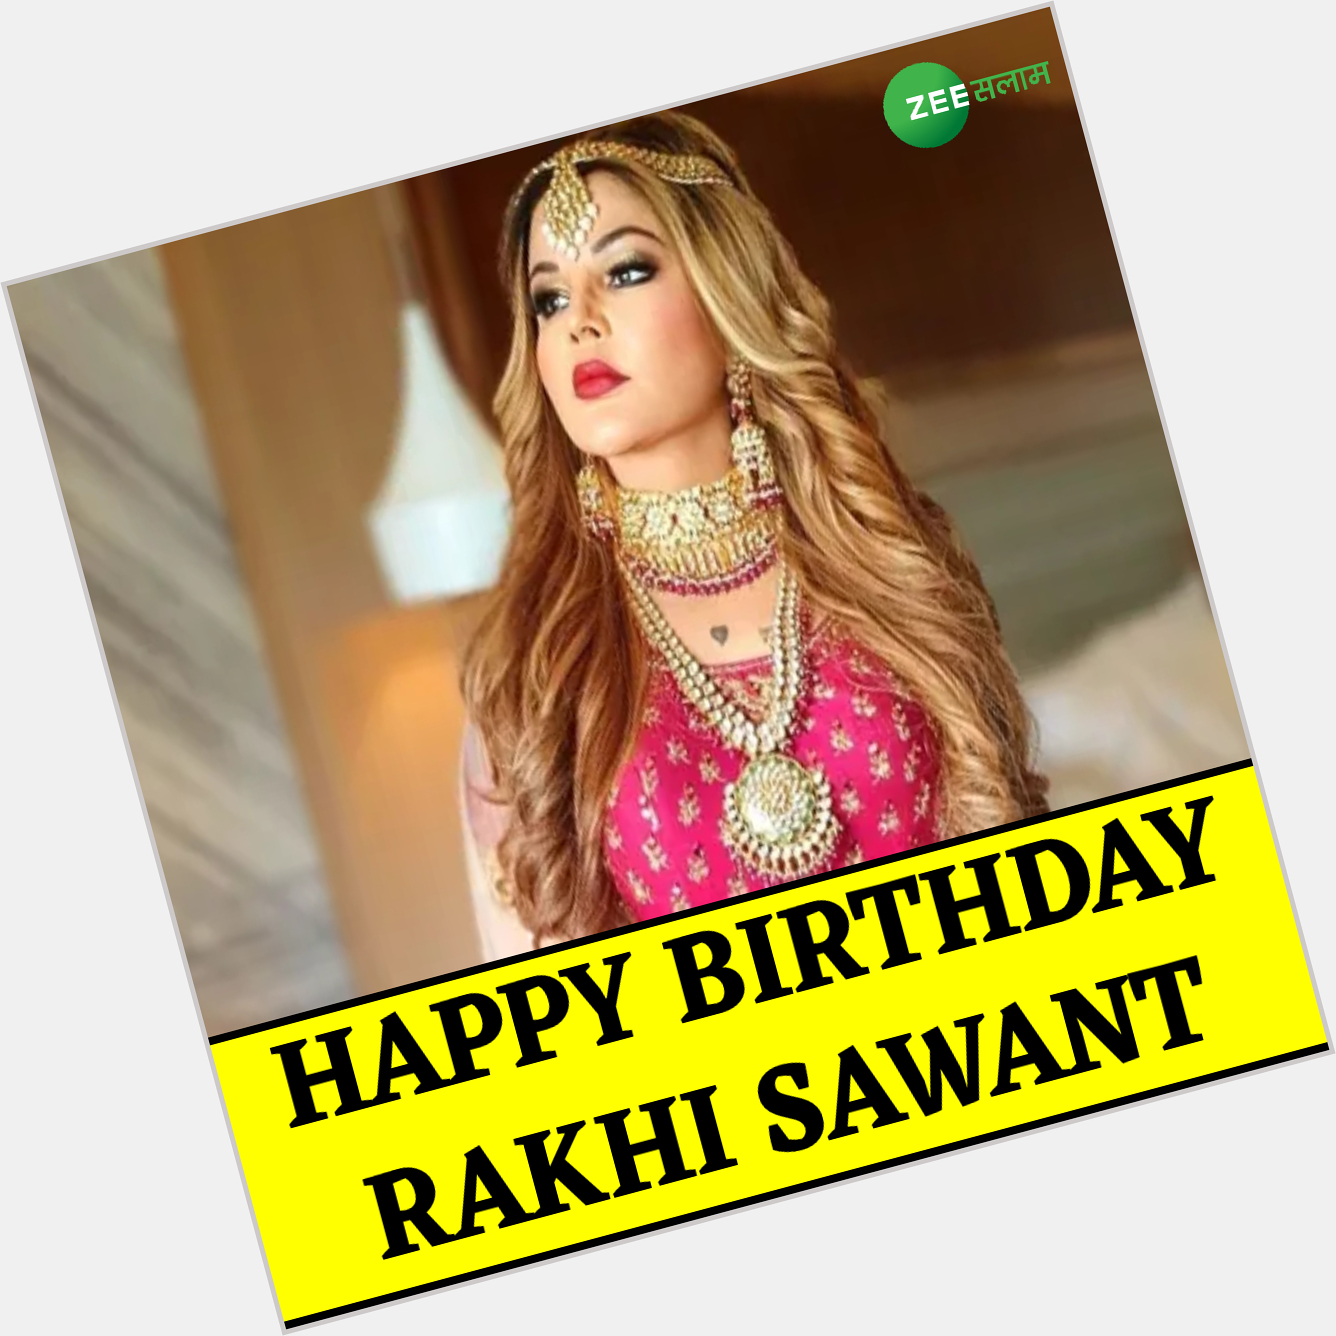 Happy Birthday Rakhi Sawant | | | | 